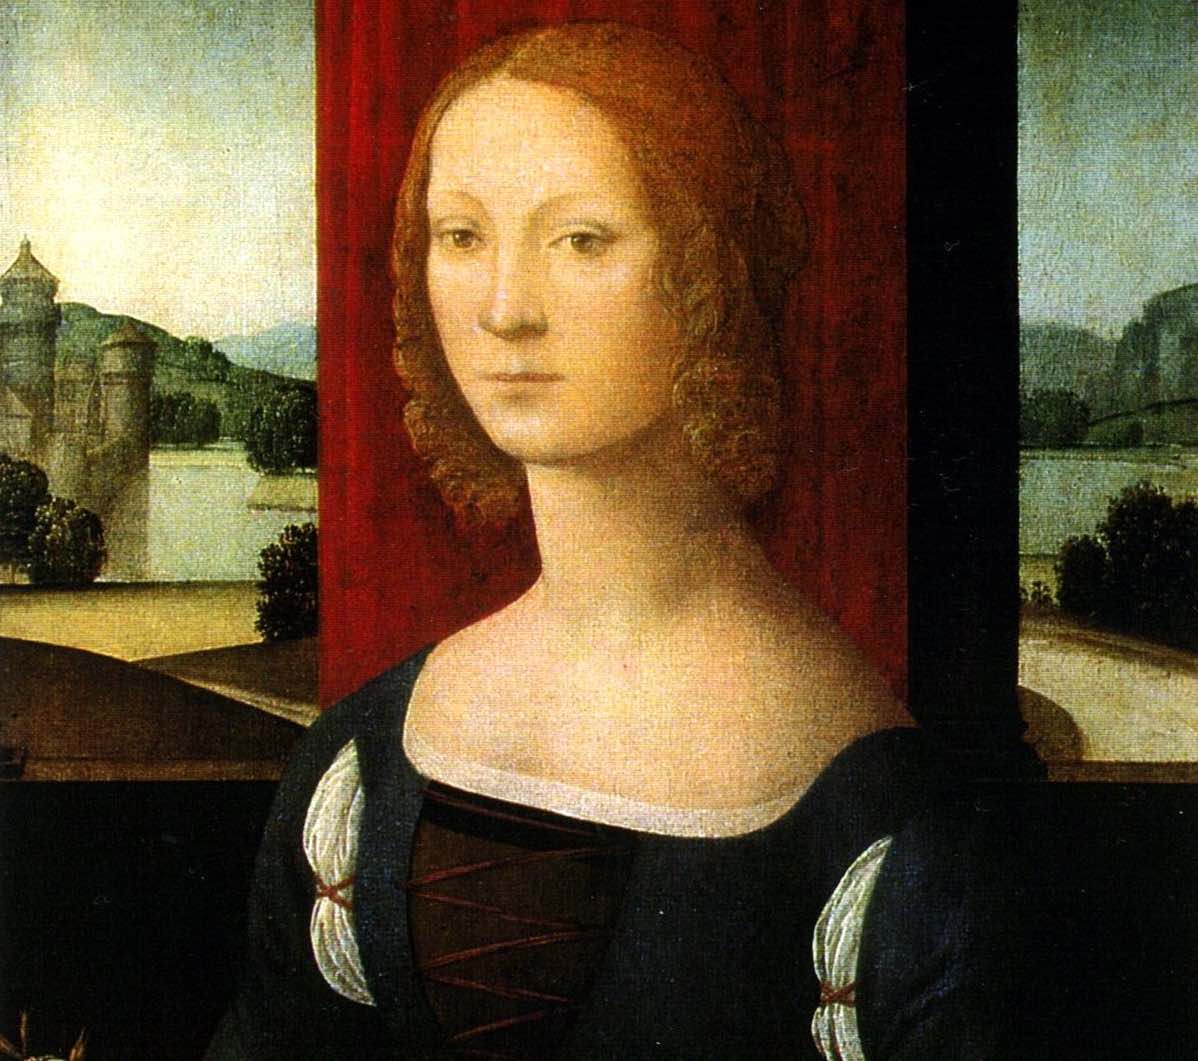 Caterina Sforza, Signora di Imola e Forlì, è un'importante figura del Rinascimento. 3 matrimoni e 8 figli tra cui Giovanni de' Medici soprannominato "delle Bande Nere".